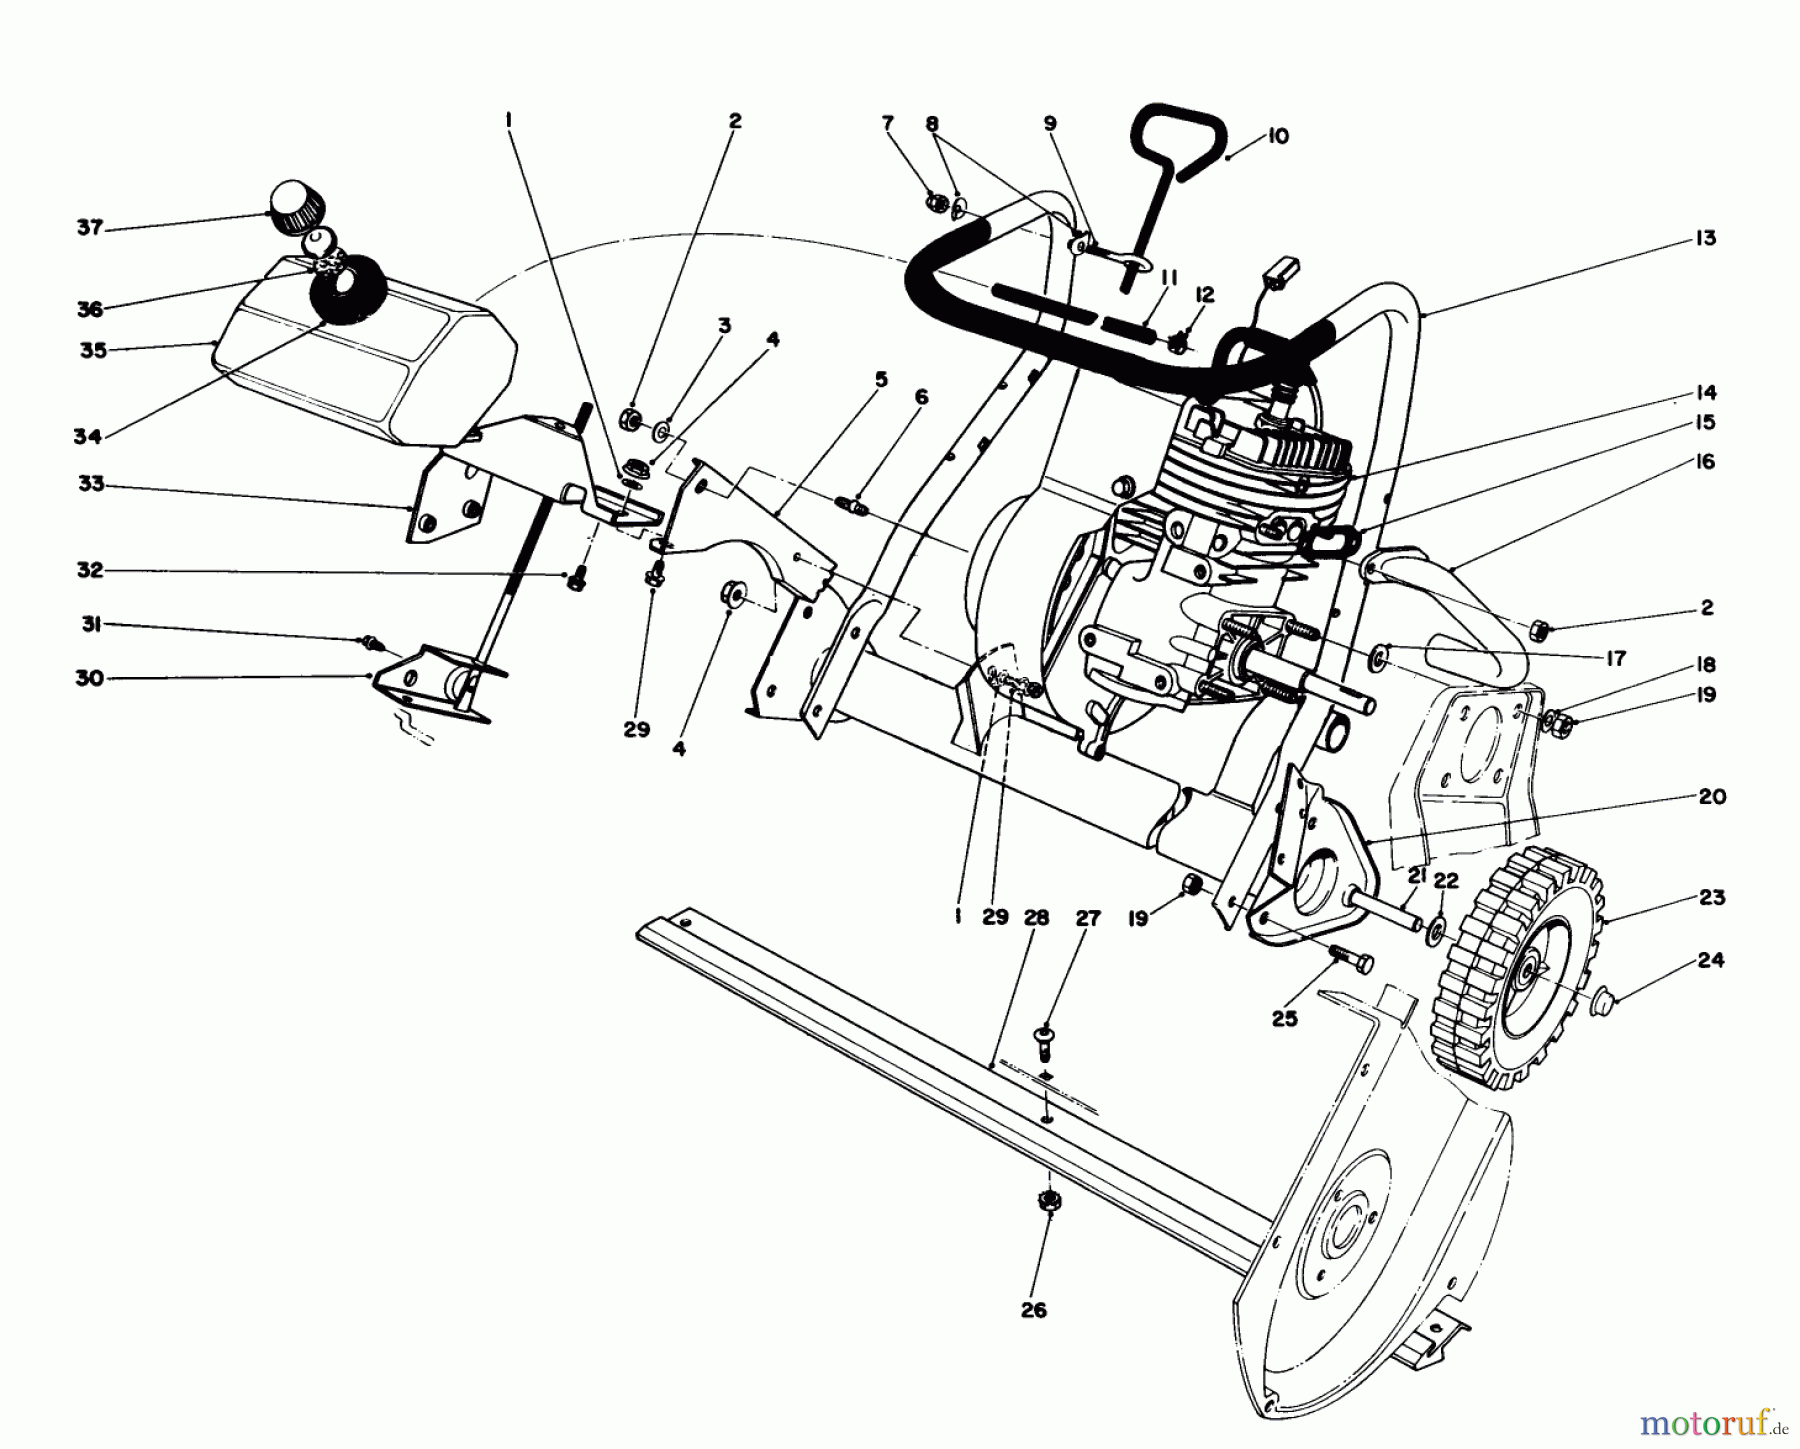  Toro Neu Snow Blowers/Snow Throwers Seite 1 38167C (S-620) - Toro S-620 Snowthrower, 1986 (6000001-6999999) ENGINE ASSEMBLY